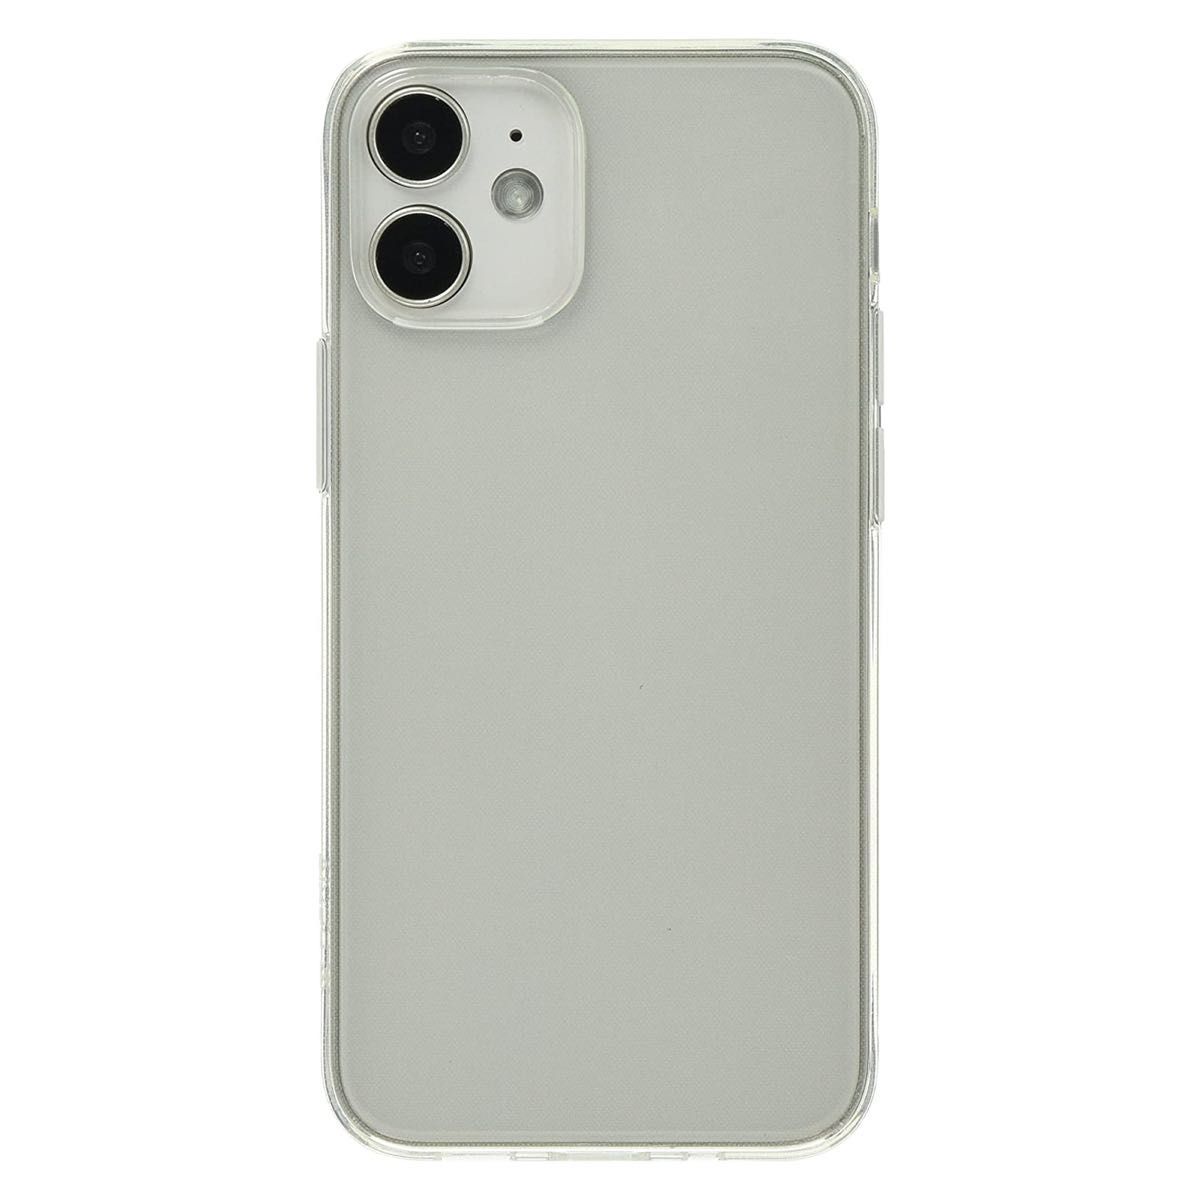 iPhone12 mini (5.4) ソフトケース 0.6mmの薄さで新機種型に対応 マイクロドット付透明ケース(TPU)